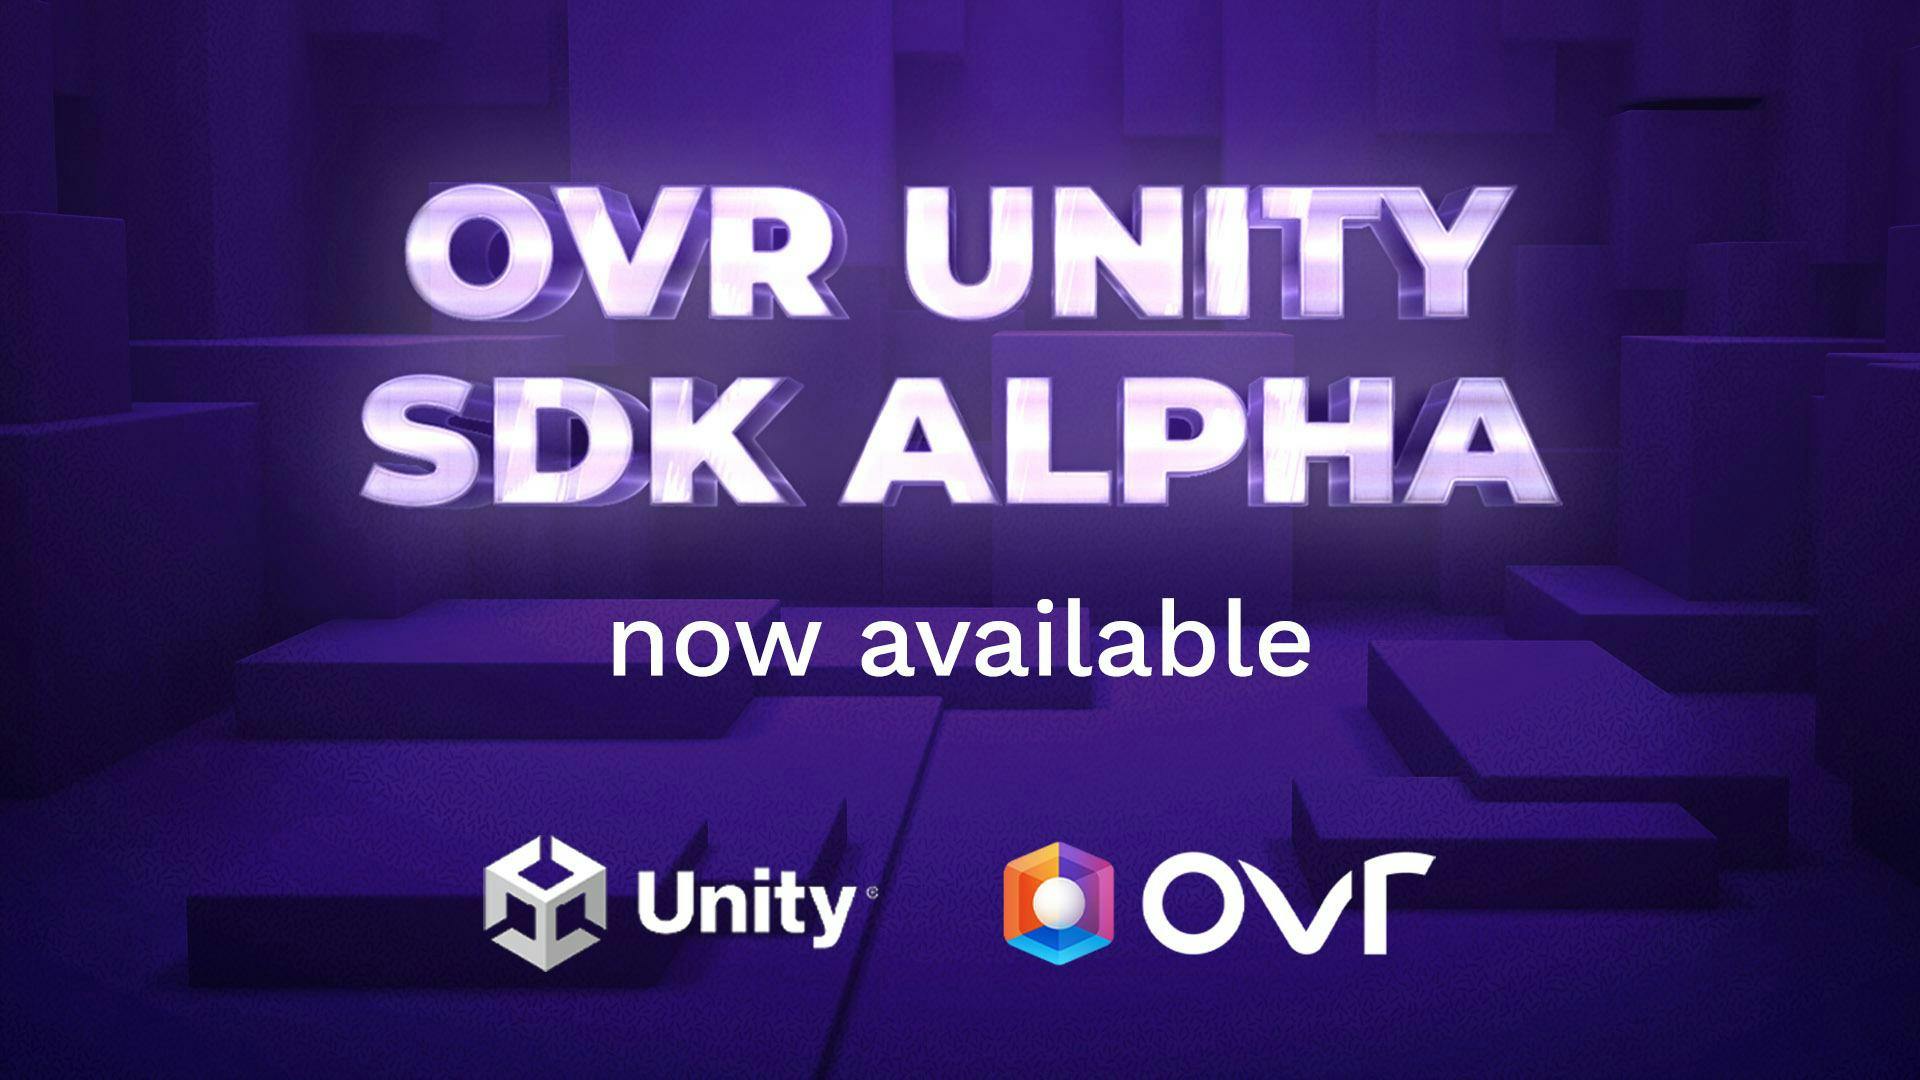 OVR Unity SDK Alpha is now Available!